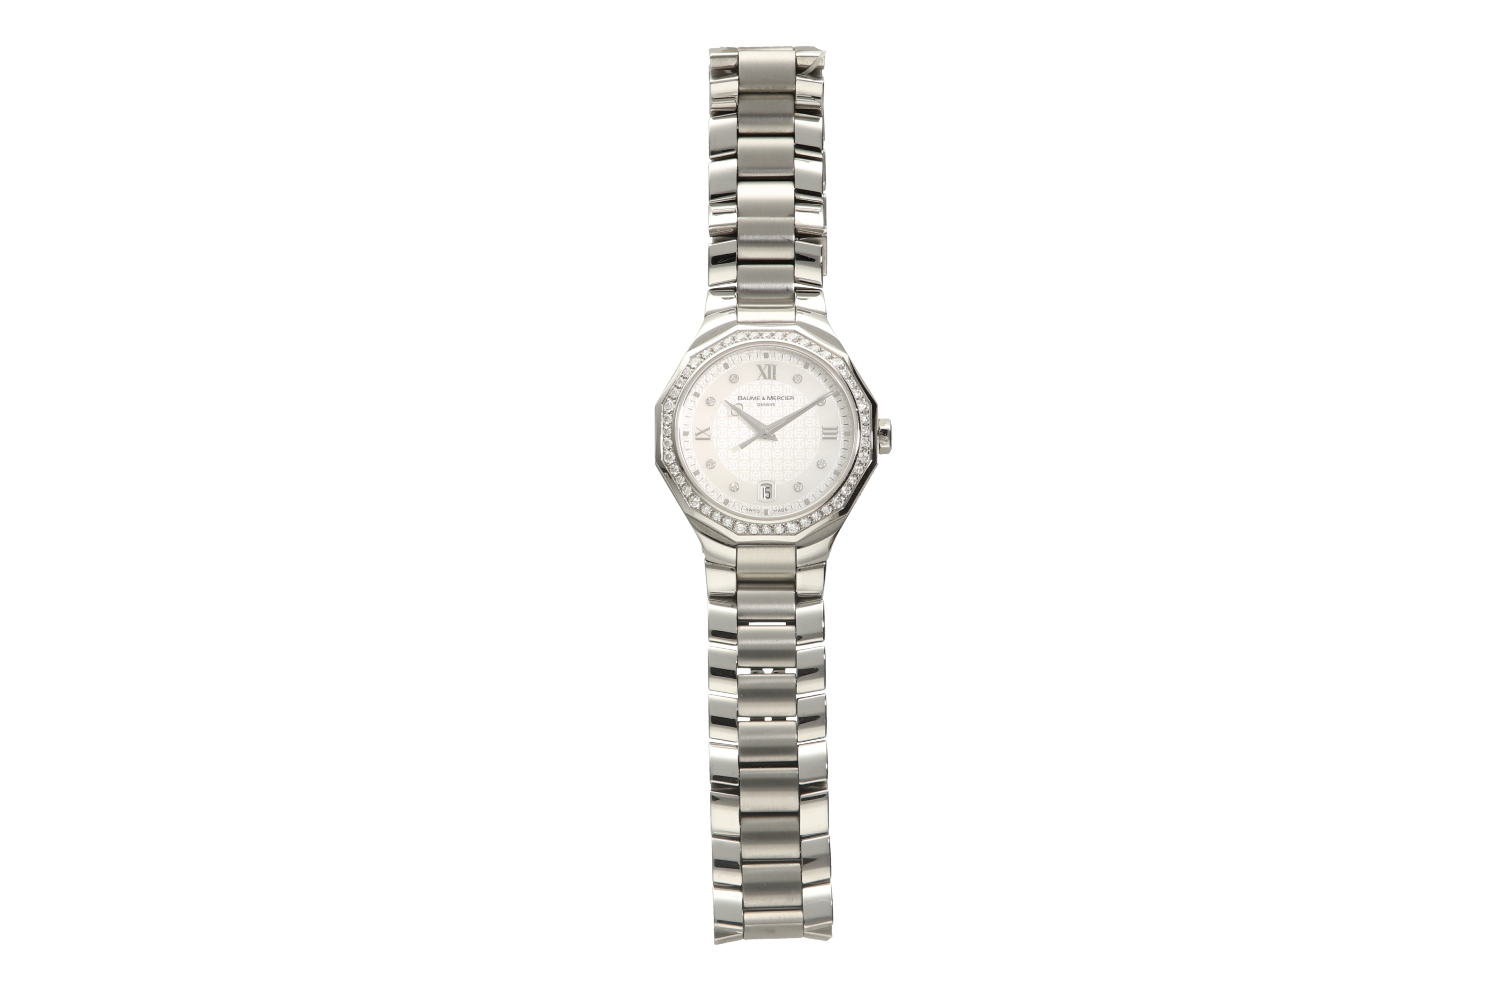 Ρολόι γυναικείο BAUME & MERCIER,8597, RIVIERA σε ατσάλι με μπρασελέ και διαμάντια S/N 4519649